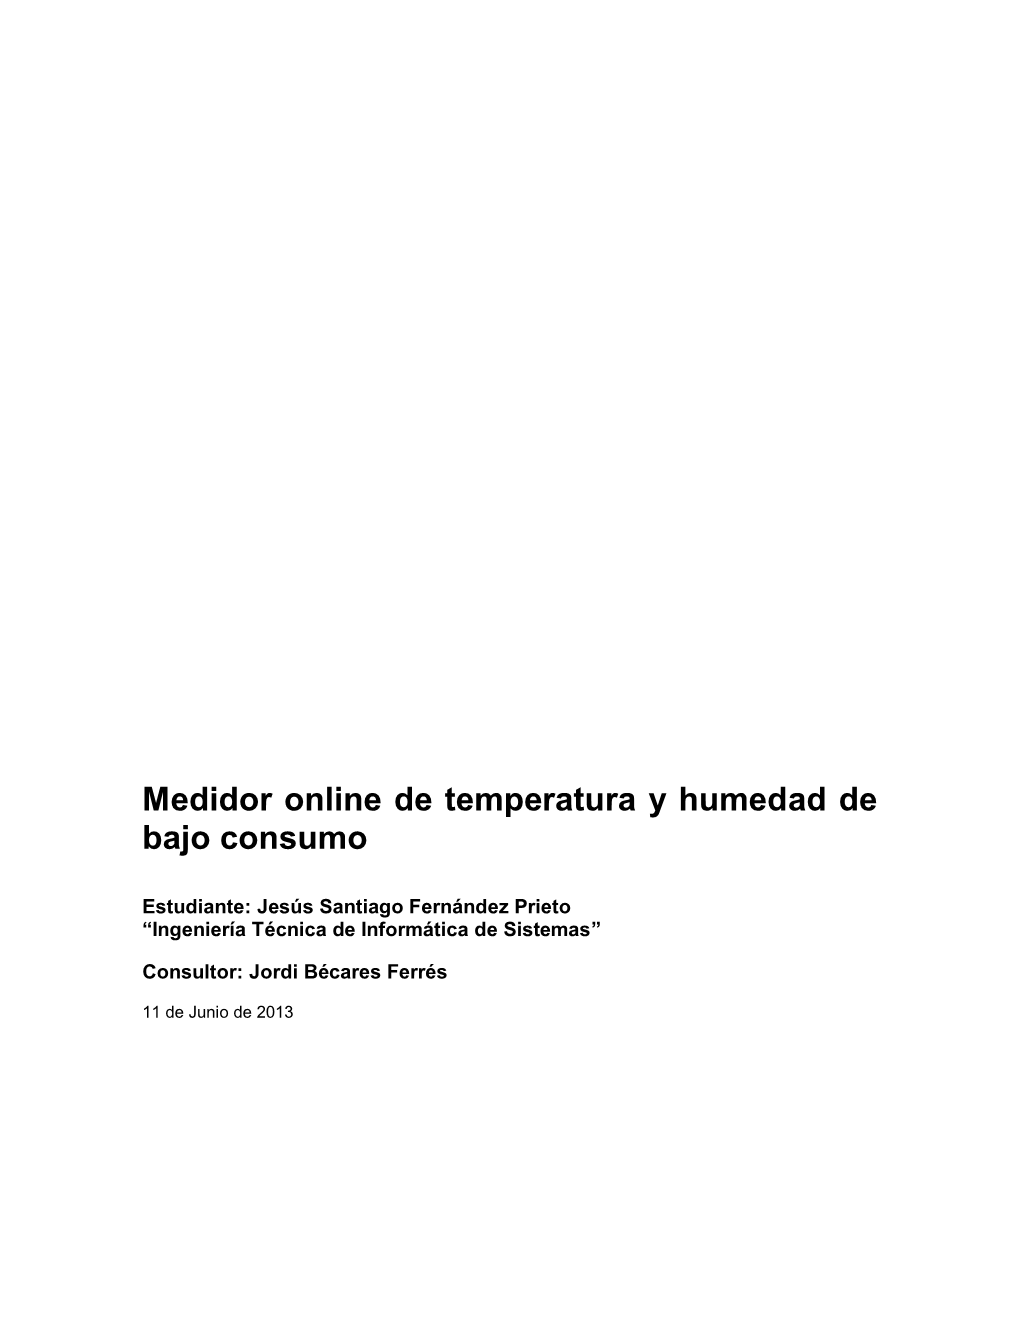 Medidor Online De Temperatura Y Humedad De Bajo Consumo